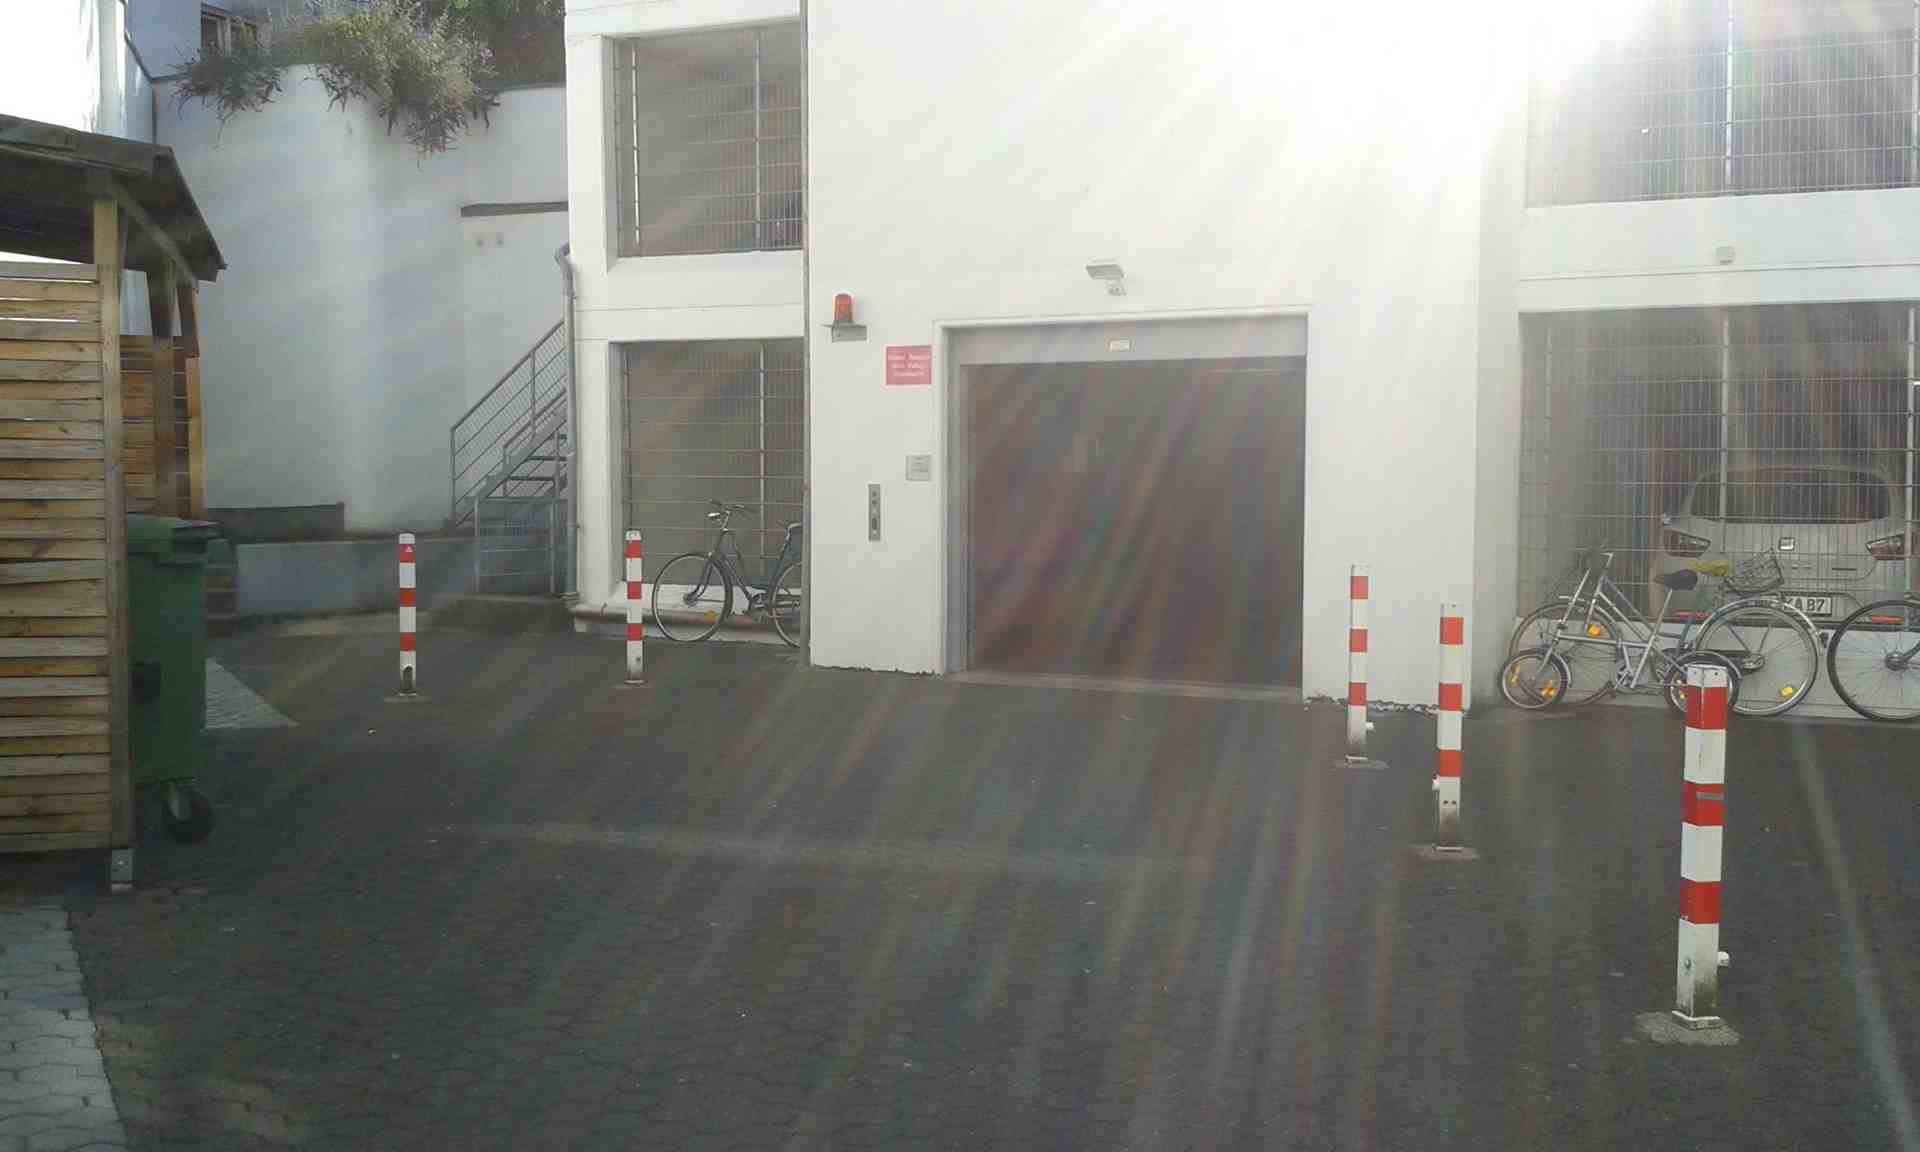 Stellplatz/Garage im UG in Kölner Innenstadt (Zülpi/Barba) - Mauritiuswall, 50676 Cologne - Photo 1 of 1